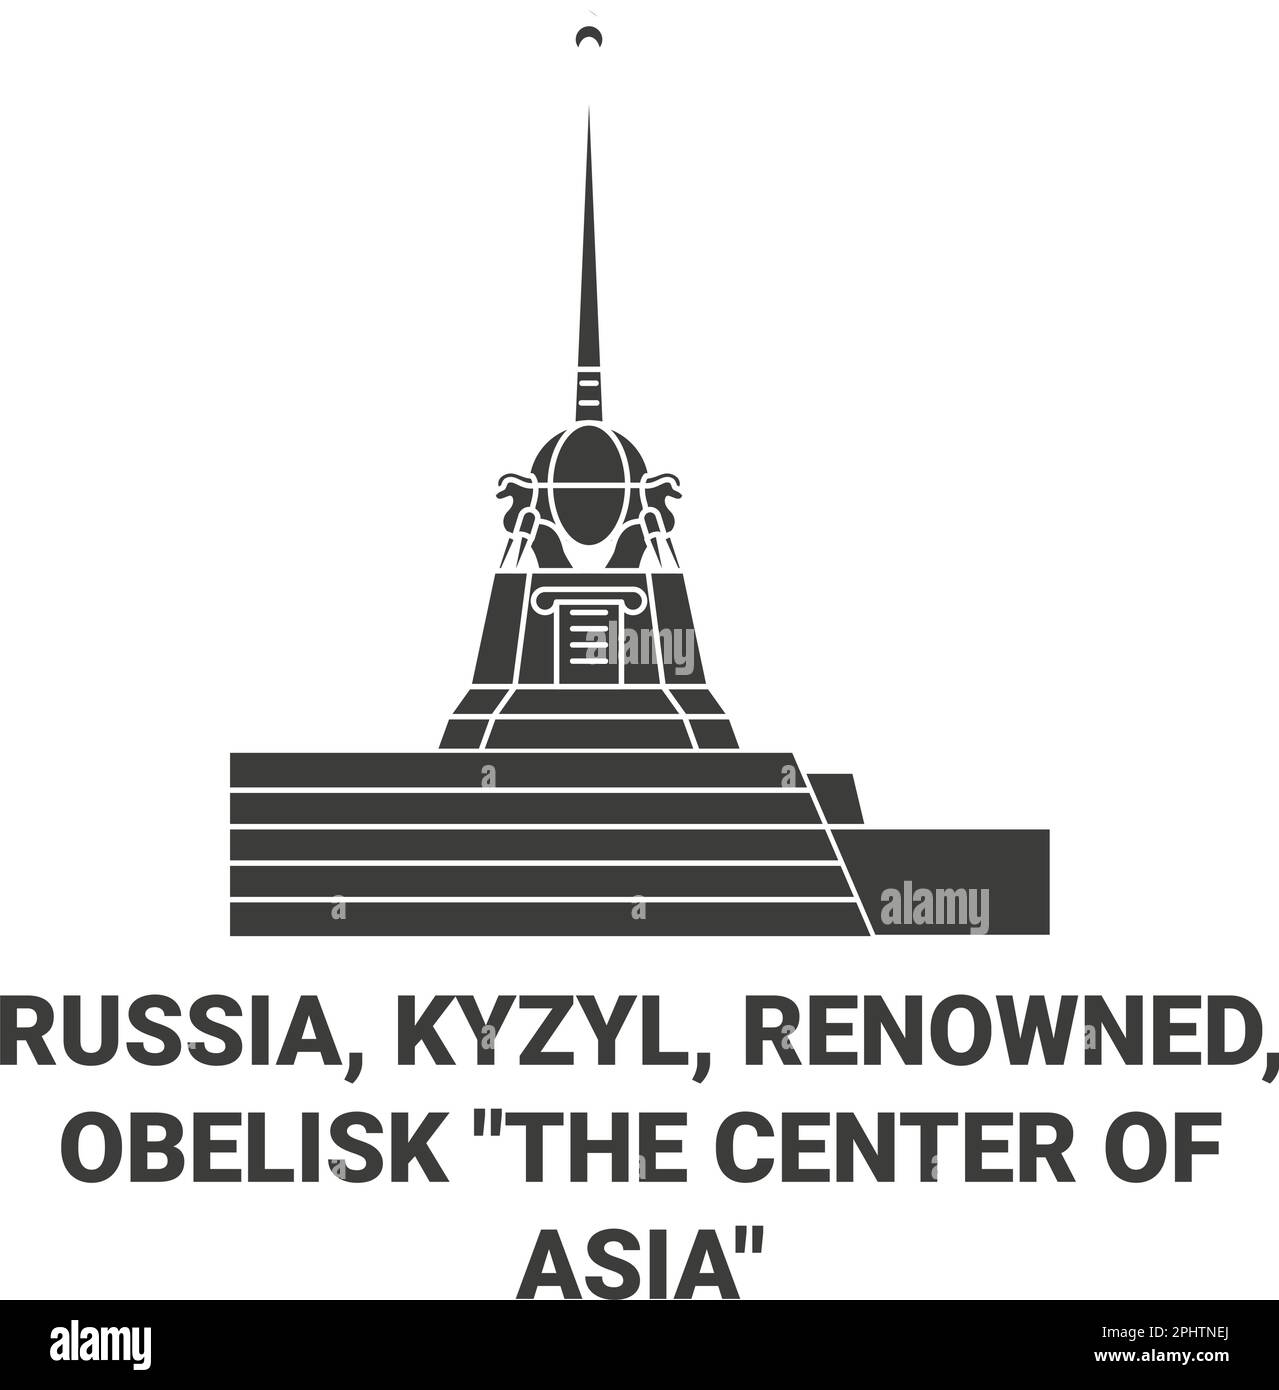 Russie, Kyzyl, renommé , Obélisque le centre de l'Asie voyage illustration vectorielle Illustration de Vecteur